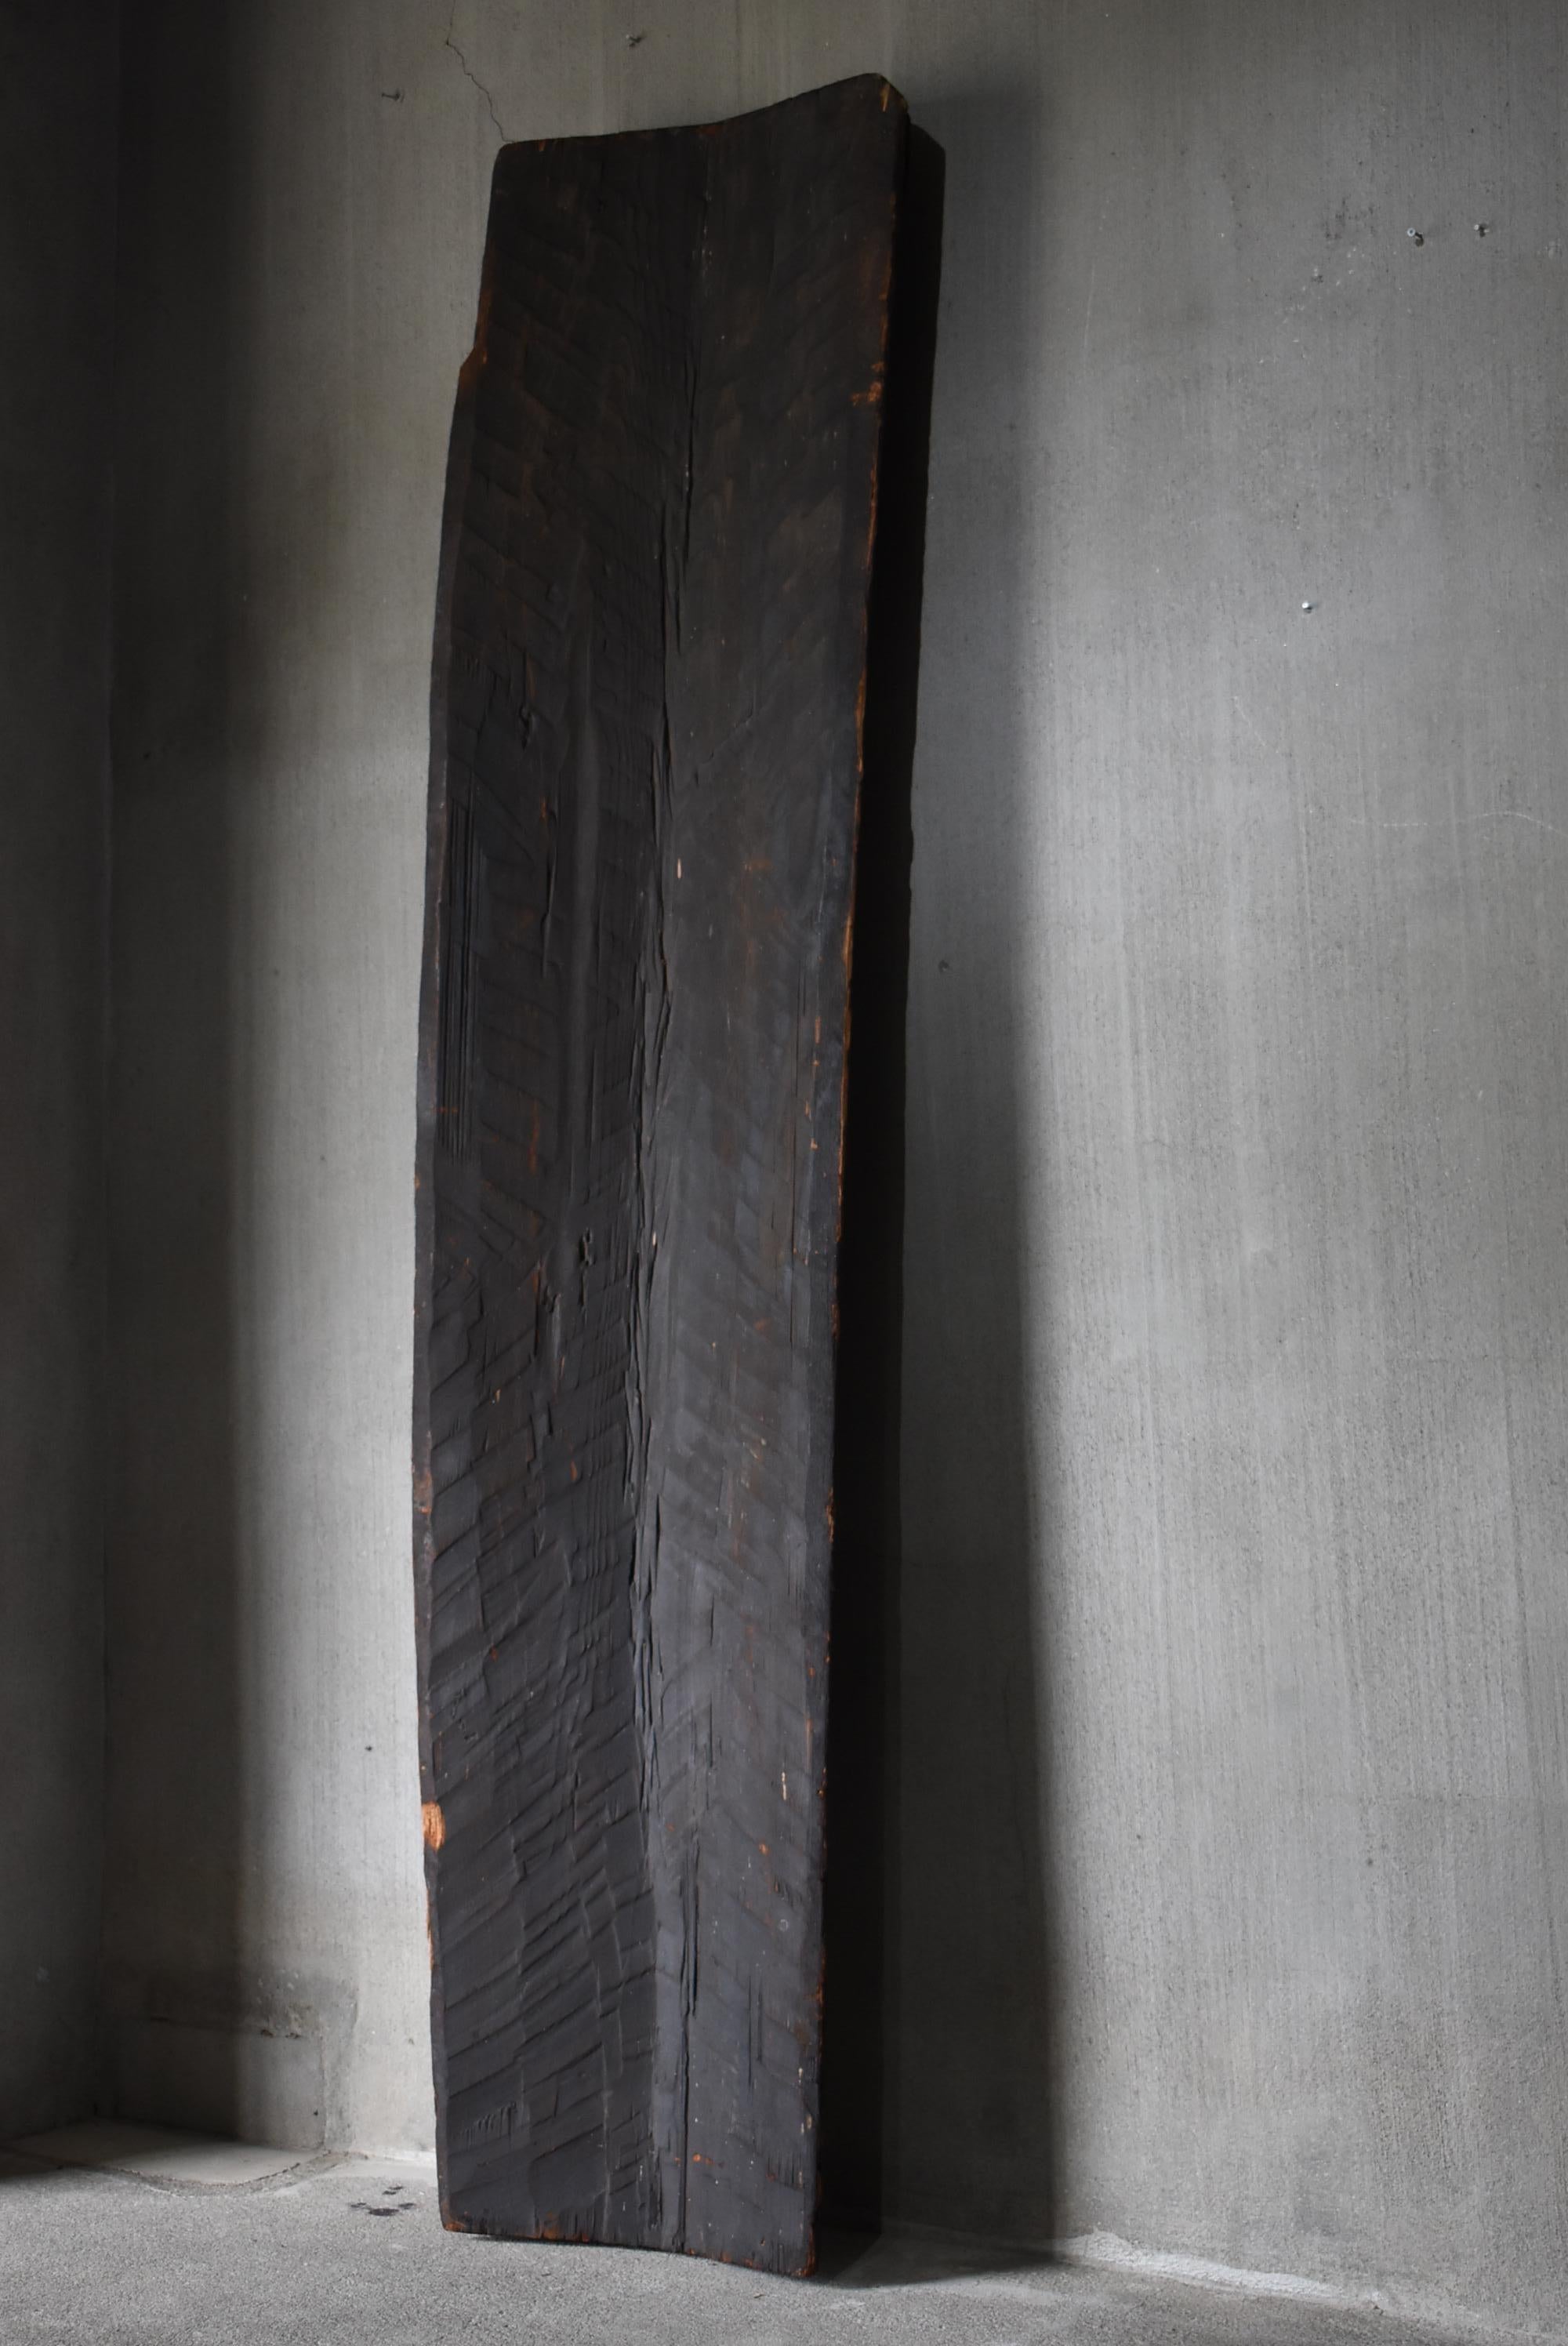 Dies ist eine sehr alte japanische Holzkrippe.
Sie stammt aus der Edo-Periode (1800-1860er Jahre).
Das MATERIAL ist Zedernholz.
Diese Krippe wird nur in einigen Gebieten in der japanischen Region Tohoku hergestellt.
Es handelt sich um eine äußerst